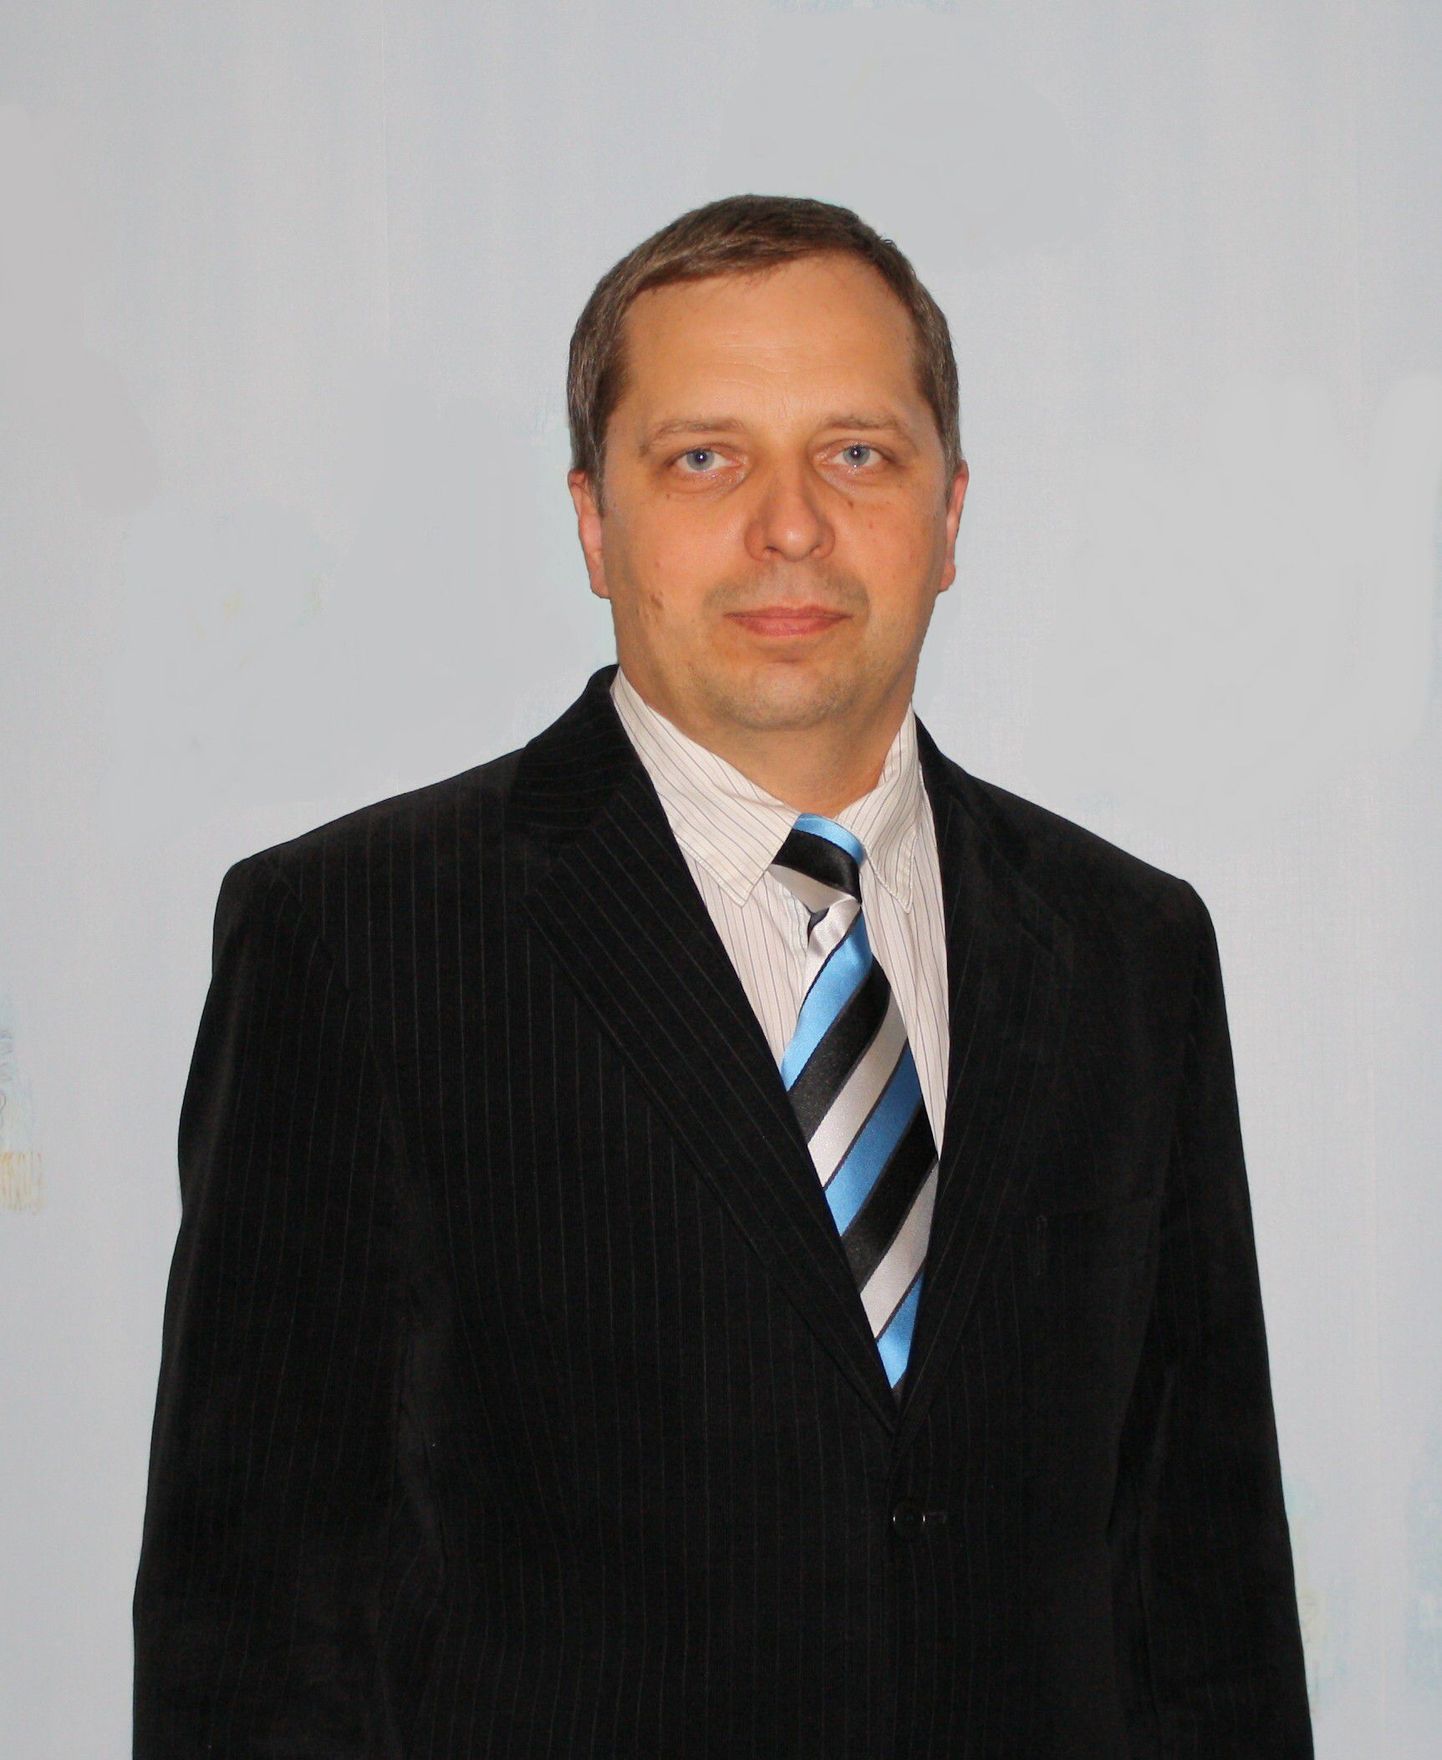 Eesti Konservatiivse Rahvaerakonna (EKRE) Pärnu juhatuse istungil kinnitati Pärnu linnapea kandidaadiks Heldur Paulson.